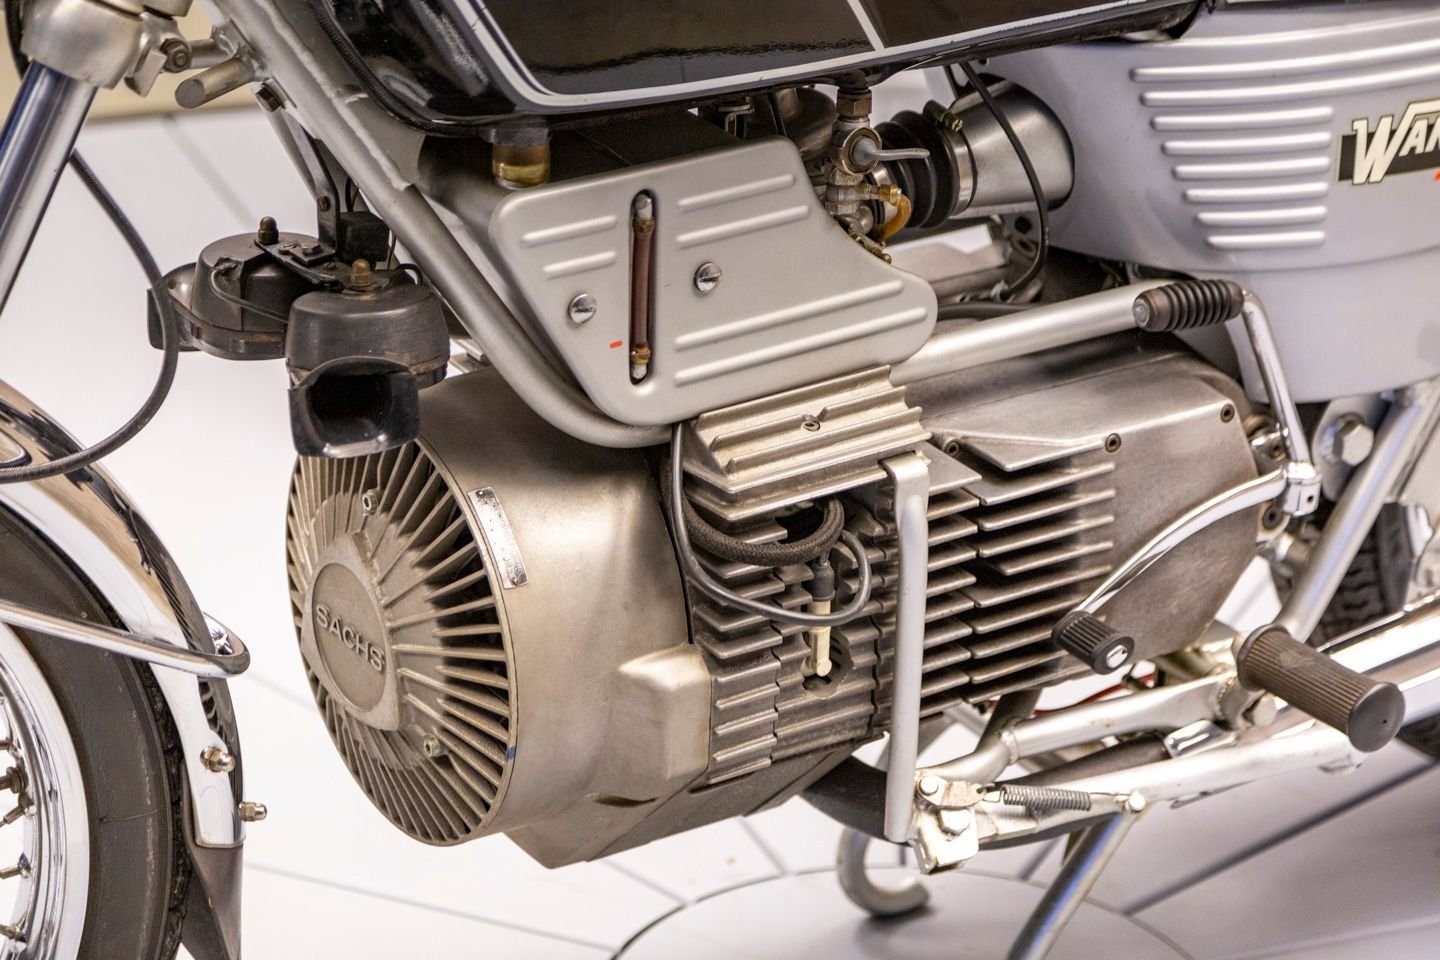 813097 | 1977 Hercules W2000 Wankel | Throttlestop | Automotive and Motorcycle Consignment Dealer